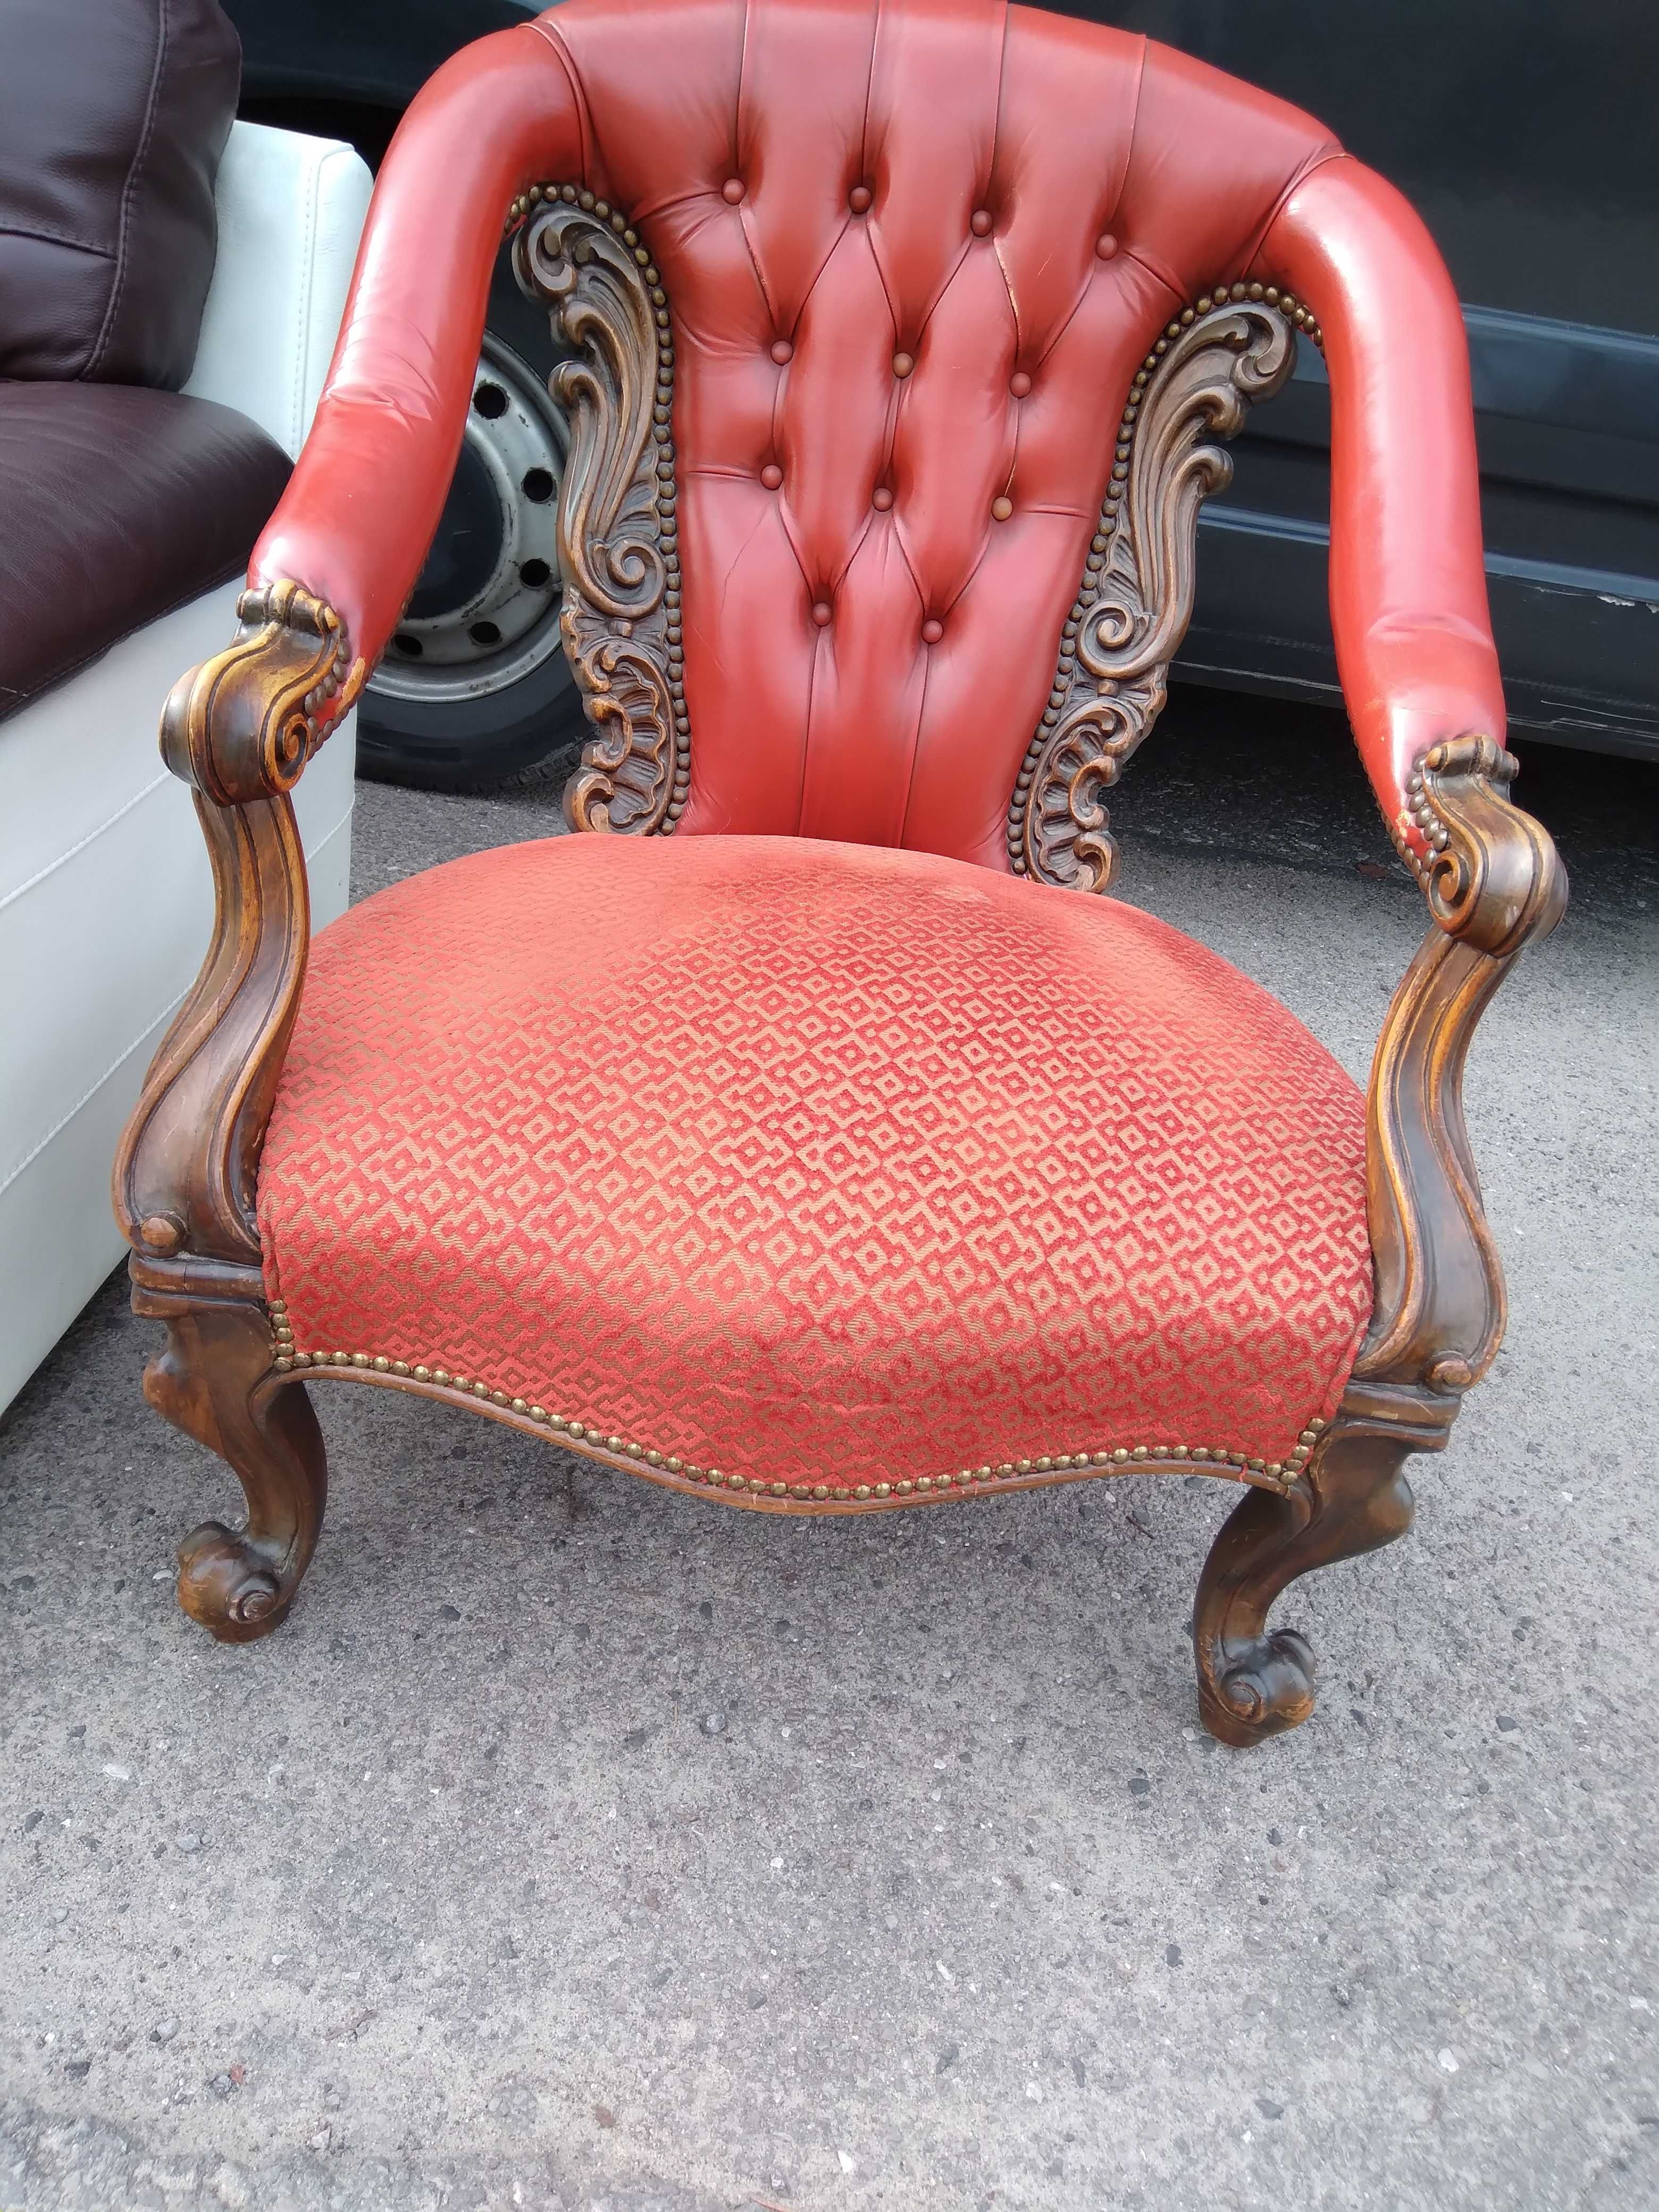 Piękny fotel tron krzesło drewniany skórzany rzeźbiony FV DOWÓZ